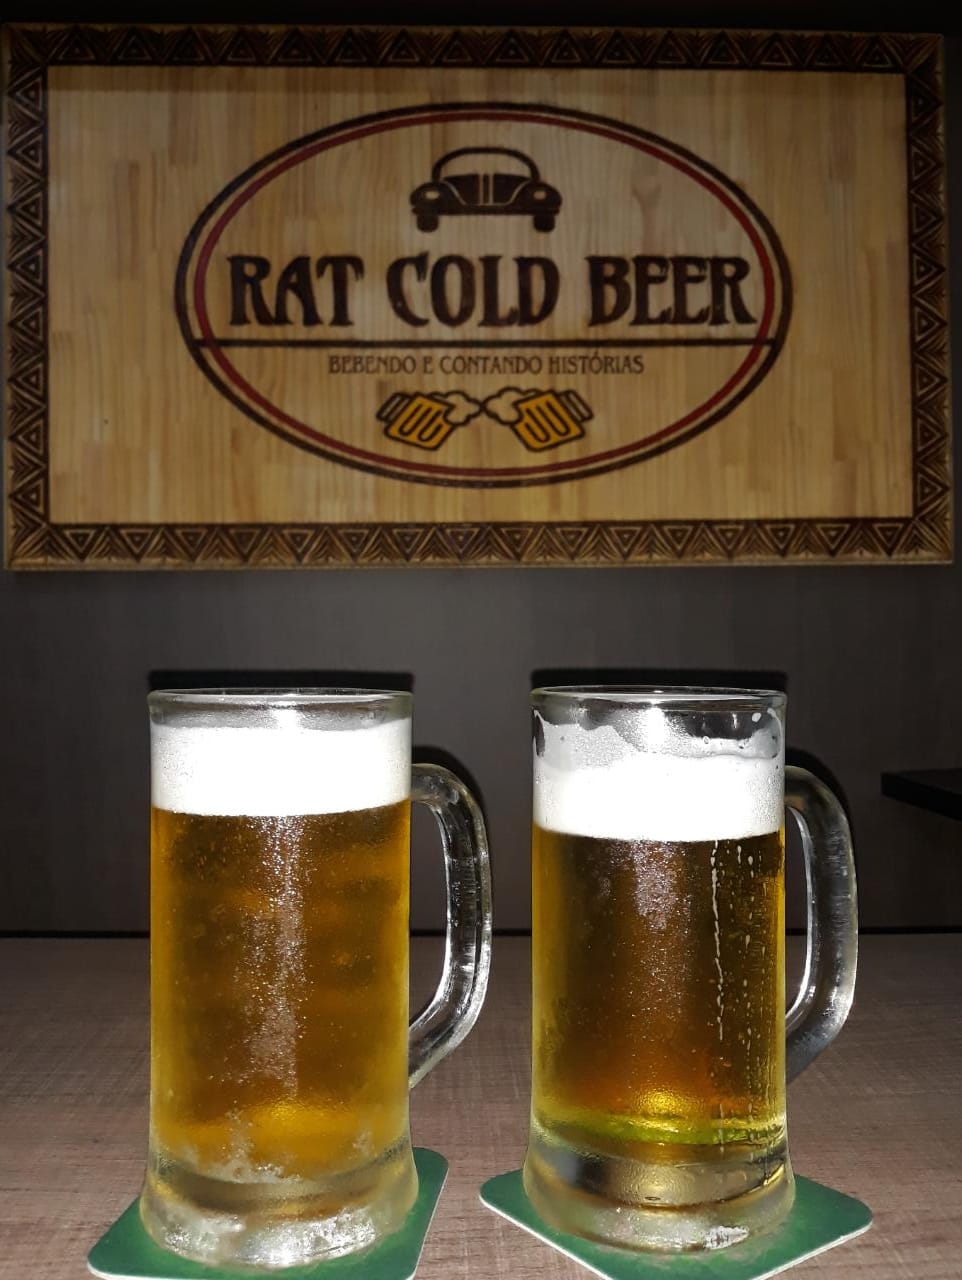 Rat cold beer